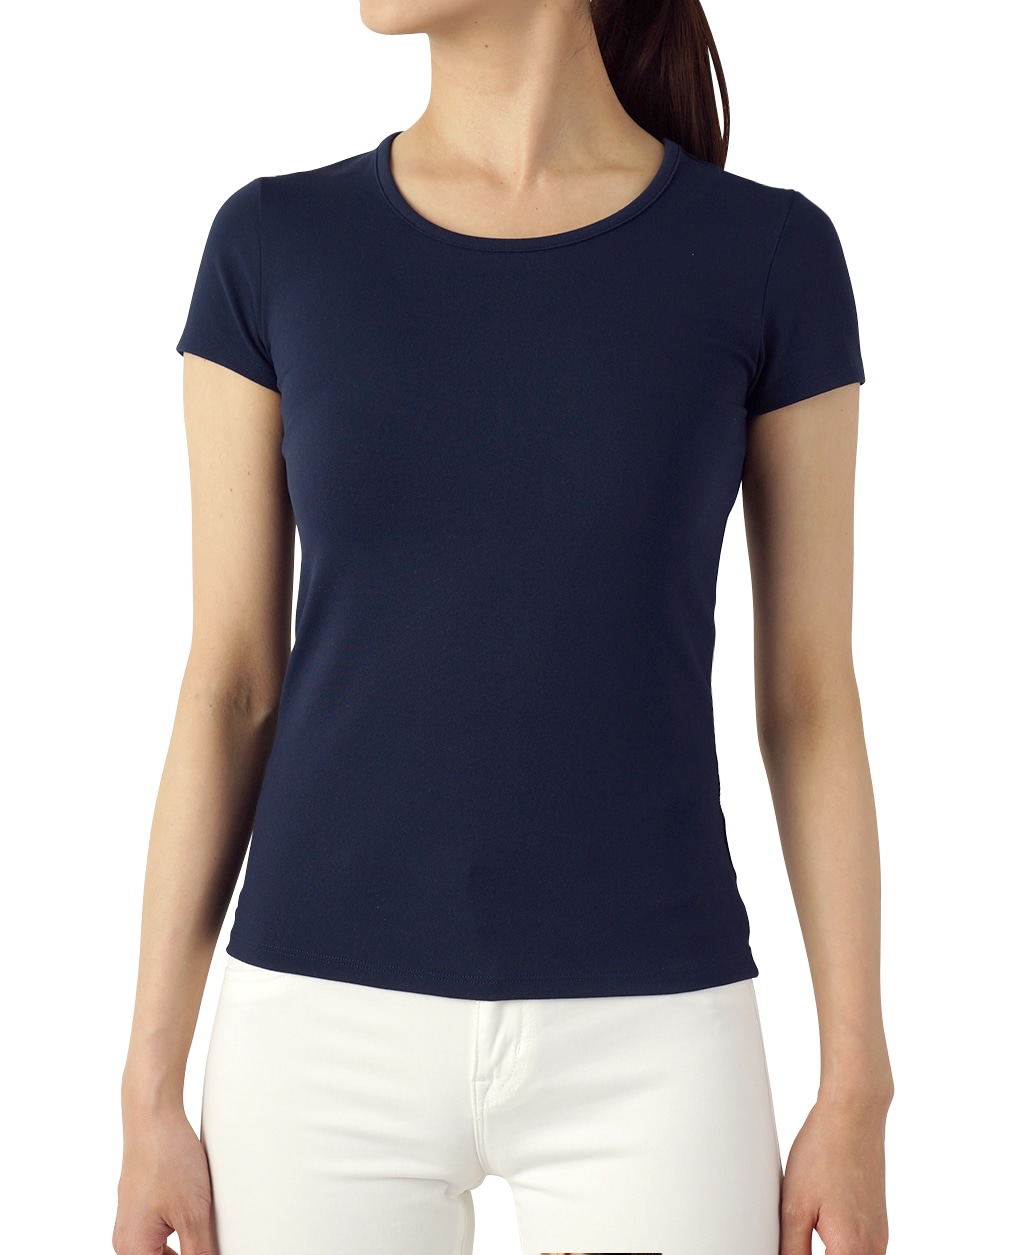 クルーネック半袖Tシャツ(36 ネイビー): レディース | メーカーズシャツ鎌倉 公式通販 | 日本製ワイシャツ ネクタイ ブラウス